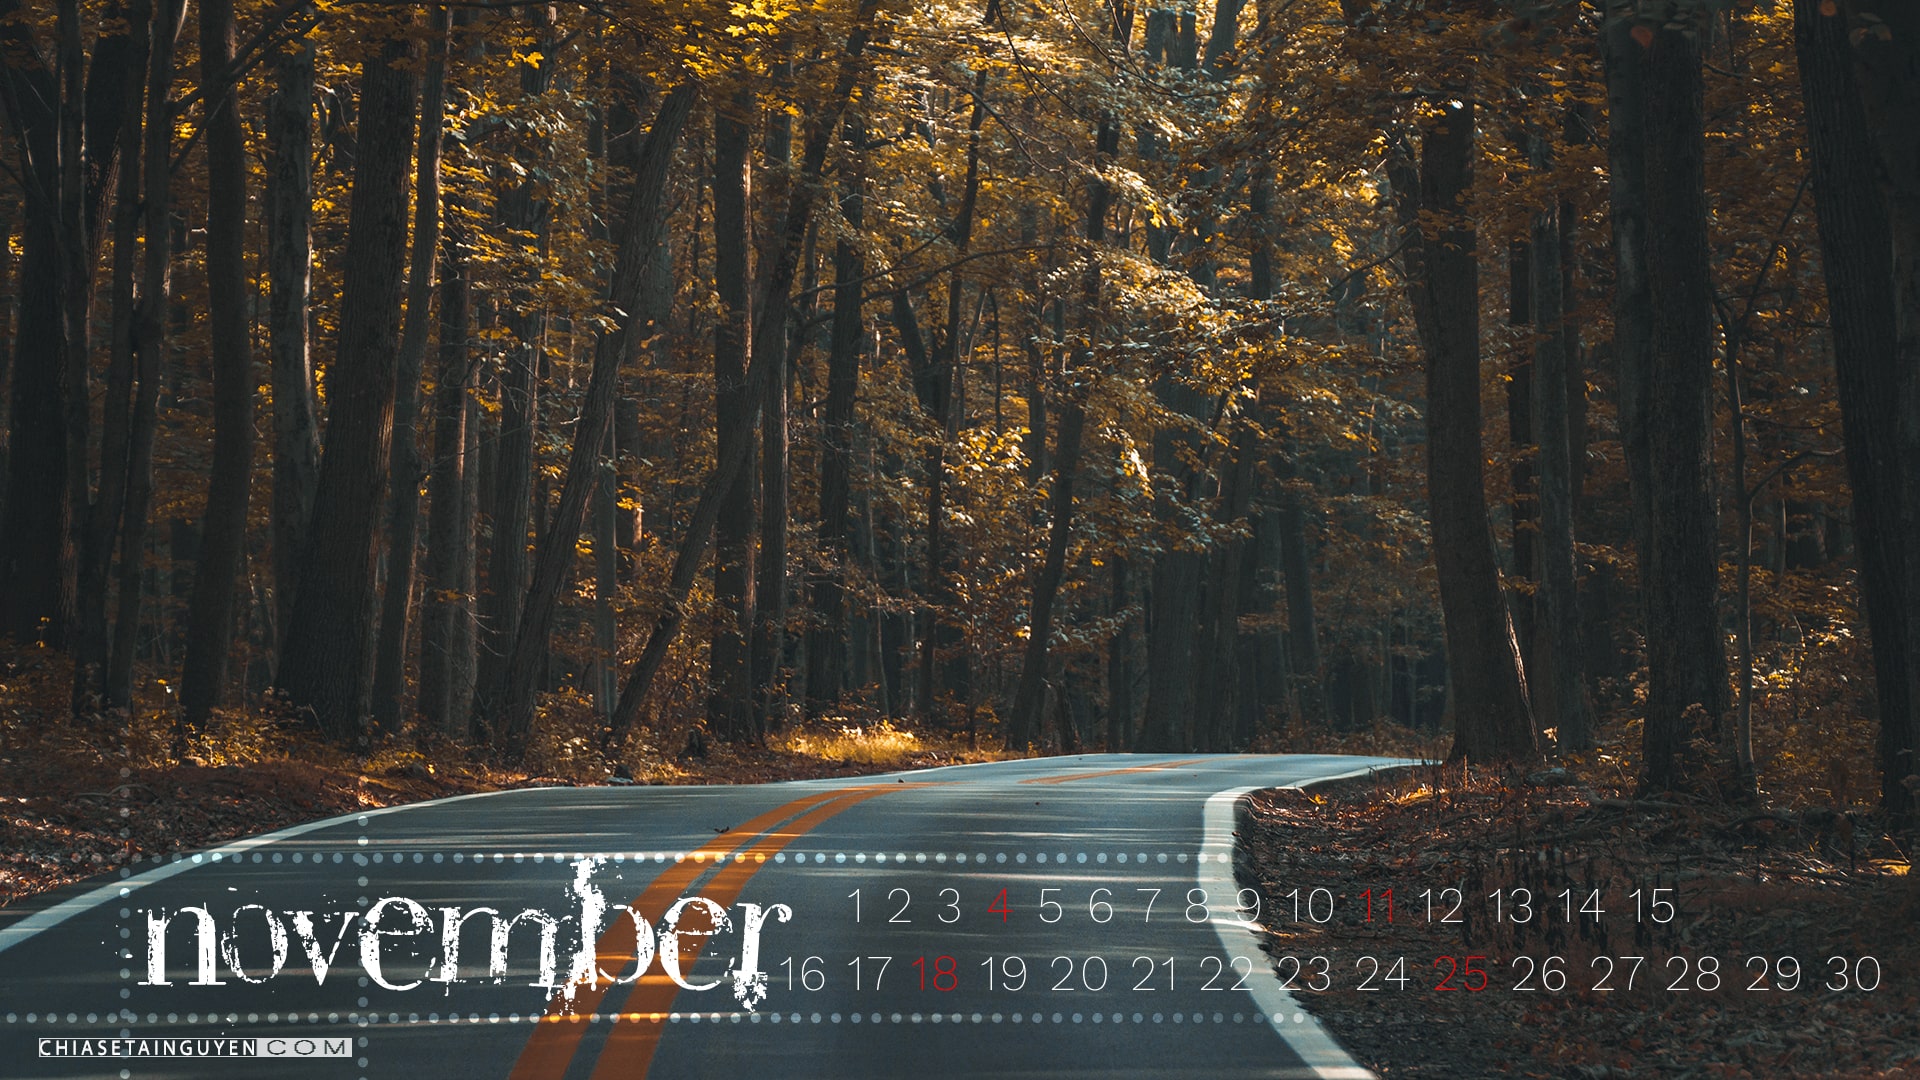 Hình nền Desktop tháng 11 đẹp: Một mùa thu rực rỡ hữu tình với những trái bí ngô vàng rực rỡ, những chiếc lá xanh lượn sóng trên những con đường đầy màu sắc. Để không bỏ lỡ bất kỳ cảnh ngộ nào của tháng 11, hãy chọn một trong những bức hình nền desktop tháng 11 đẹp nhất, mang đến cho bạn sự bình yên và tiếng ròn rỏ từ thiên nhiên.